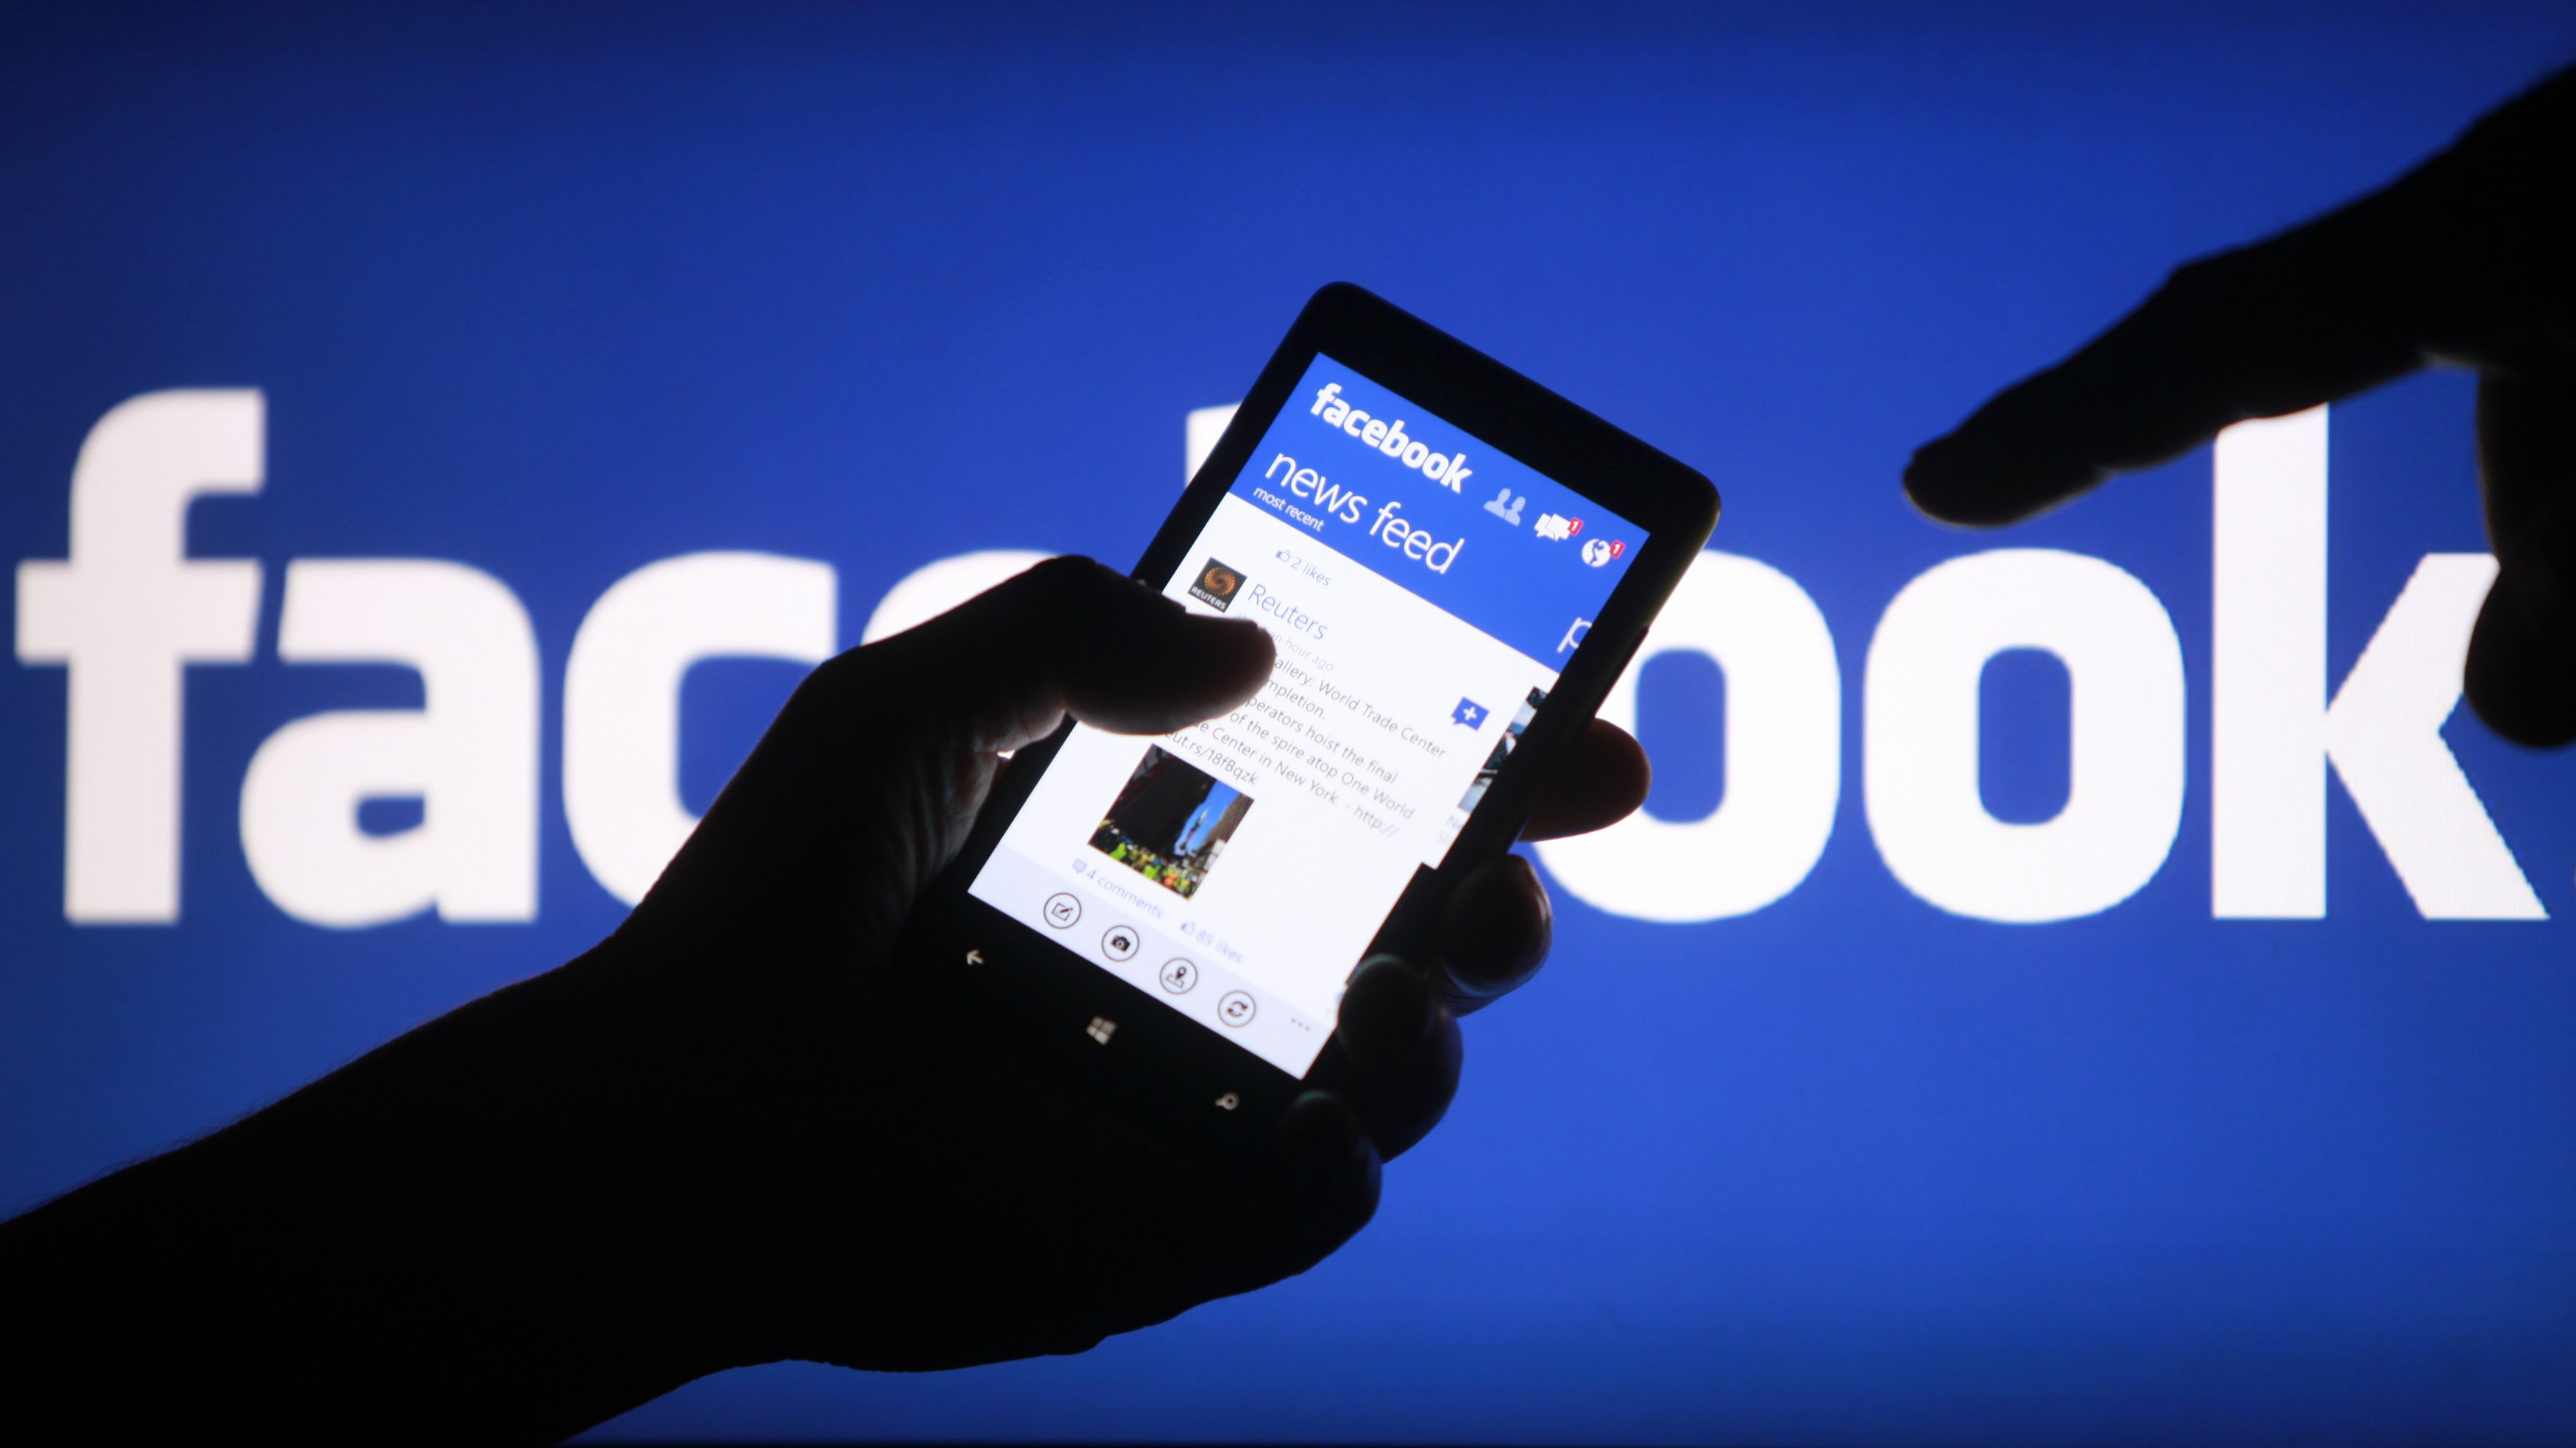 Mudanças no Facebook podem favorecer “notícias falsas”